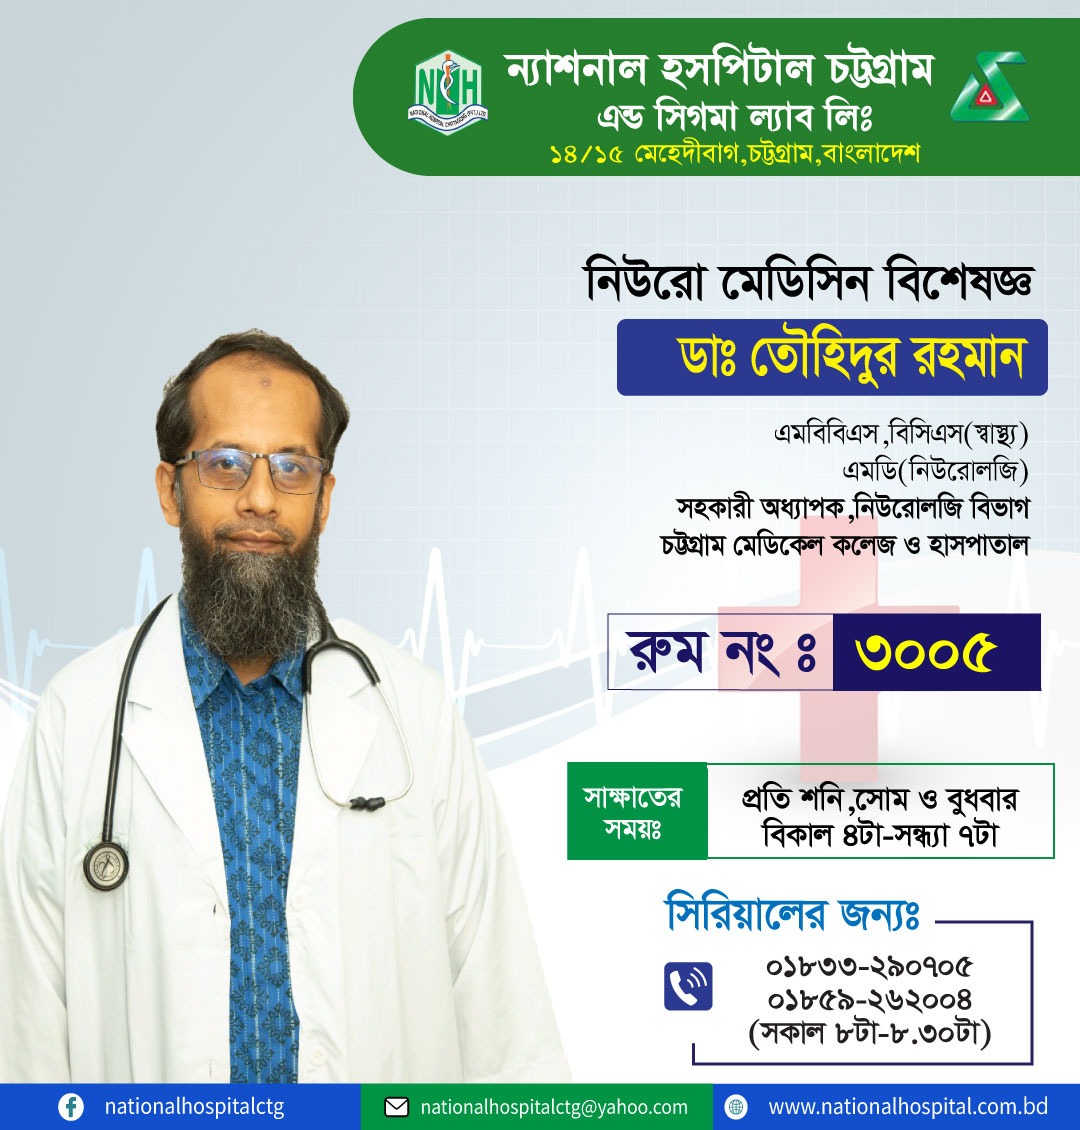 Dr Touhidur Rahman